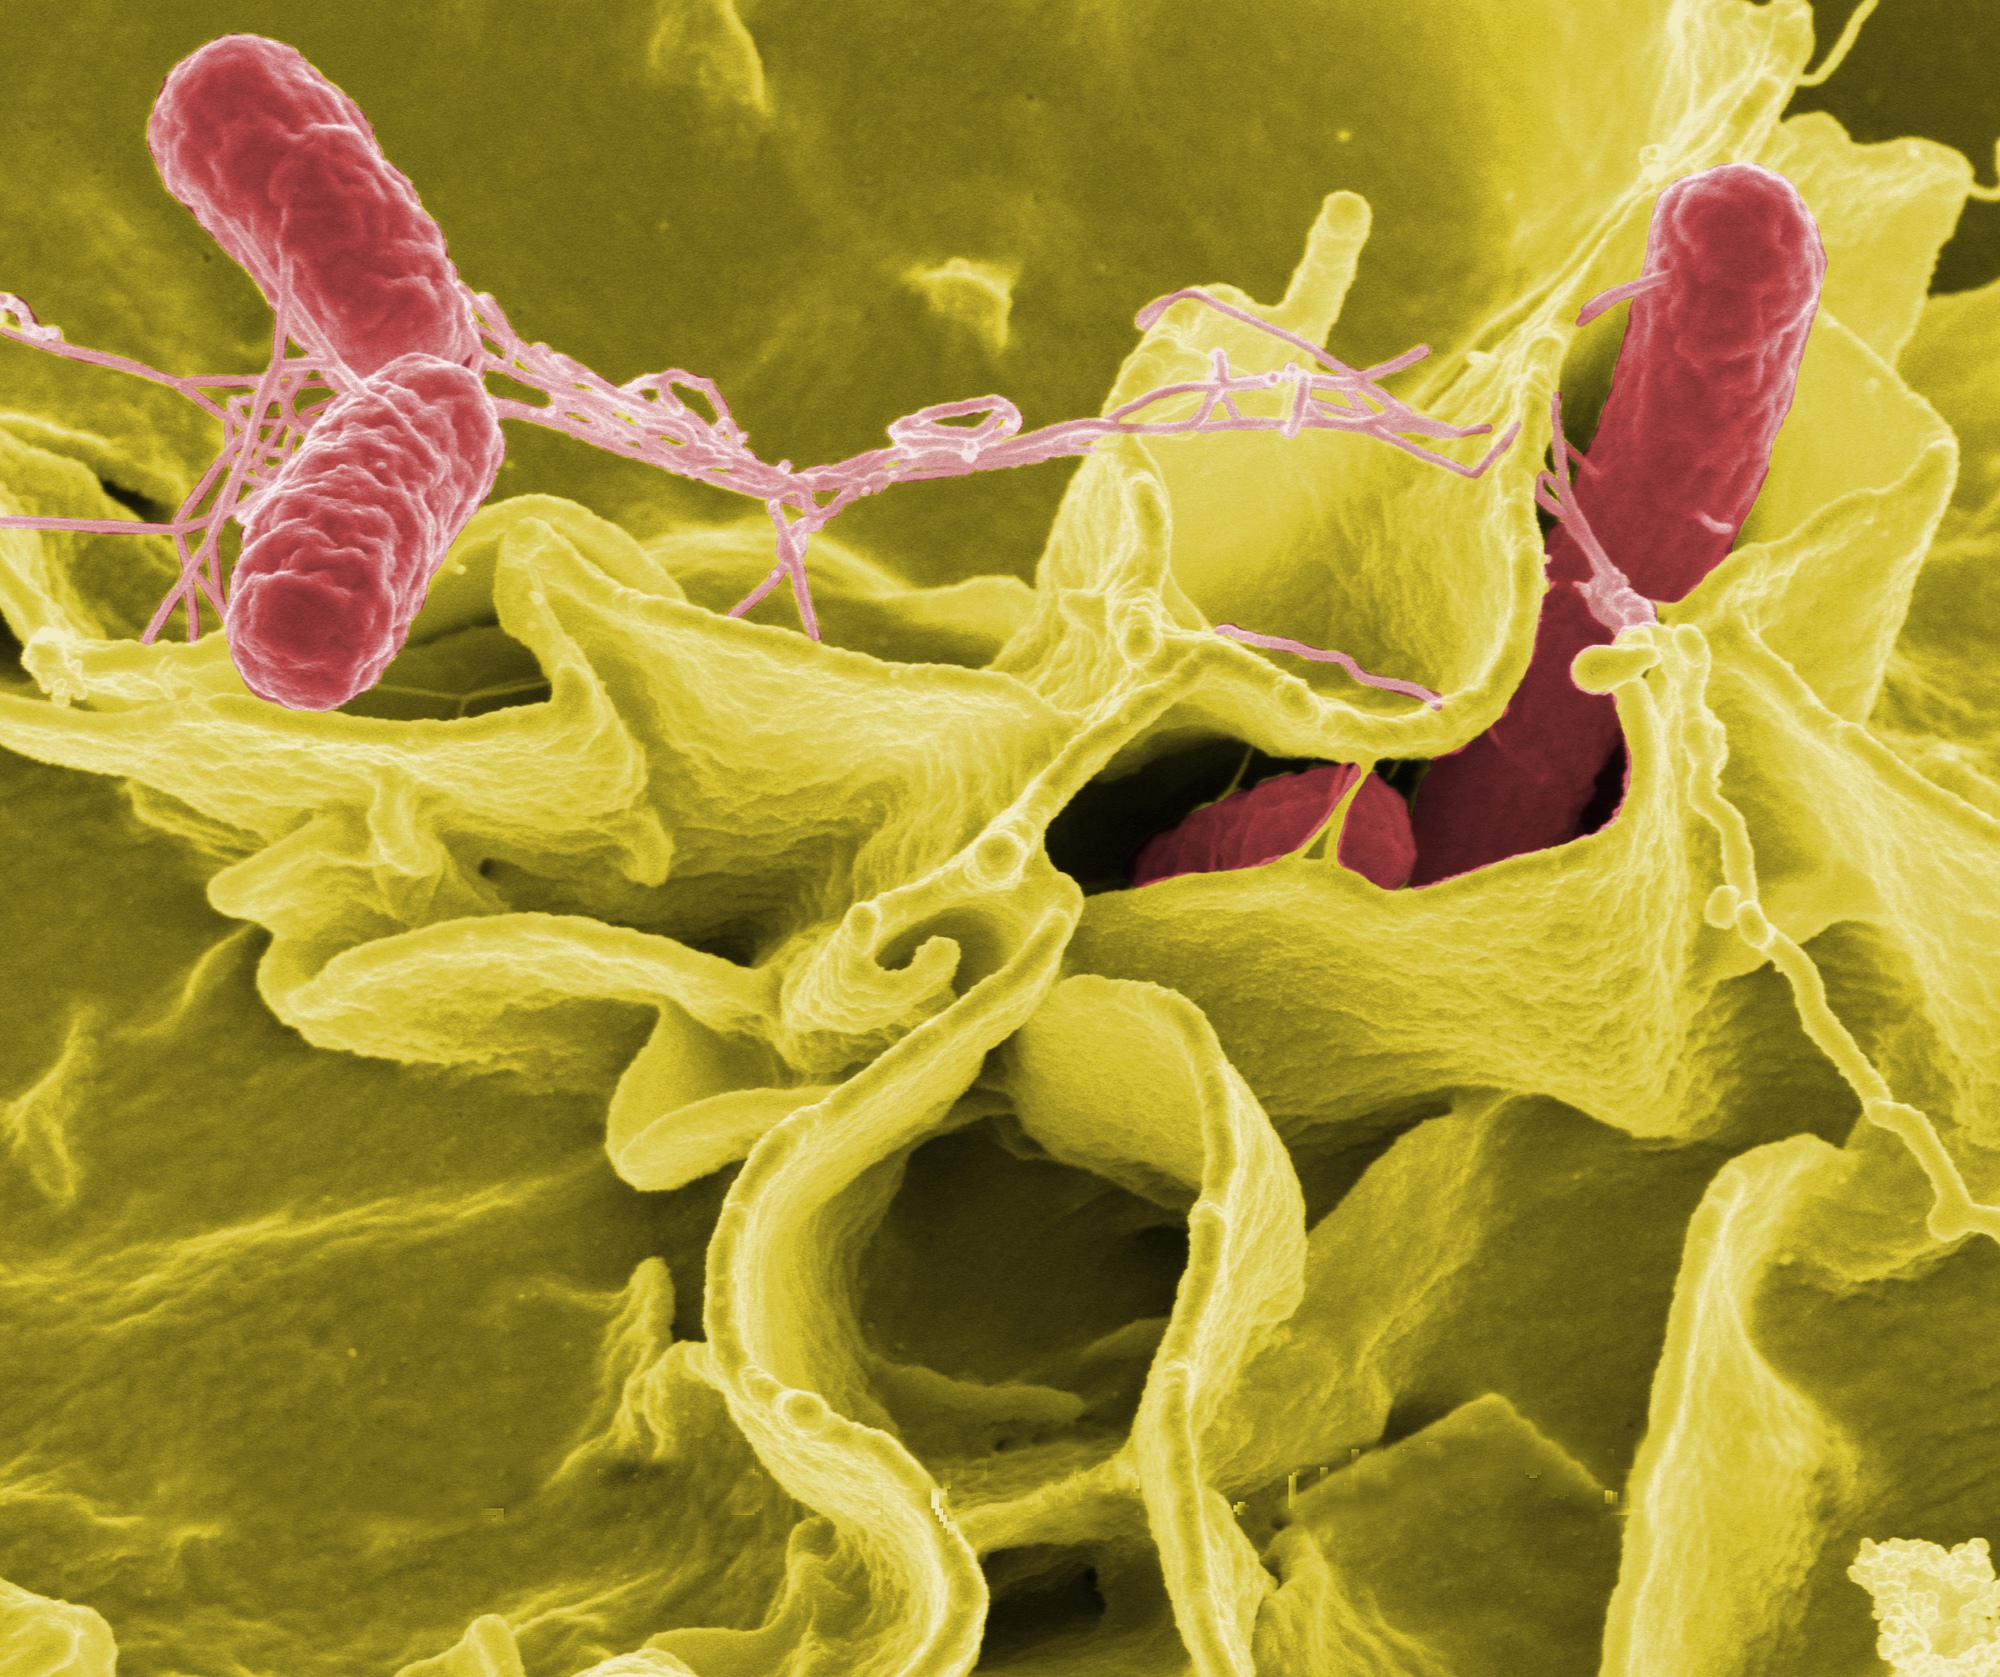 Vi khuẩn salmonella có thể lây lan ngay từ cách bảo quản thực phẩm, làm ngay việc này để tránh biến tủ lạnh thành ổ vi khuẩn - Ảnh 1.